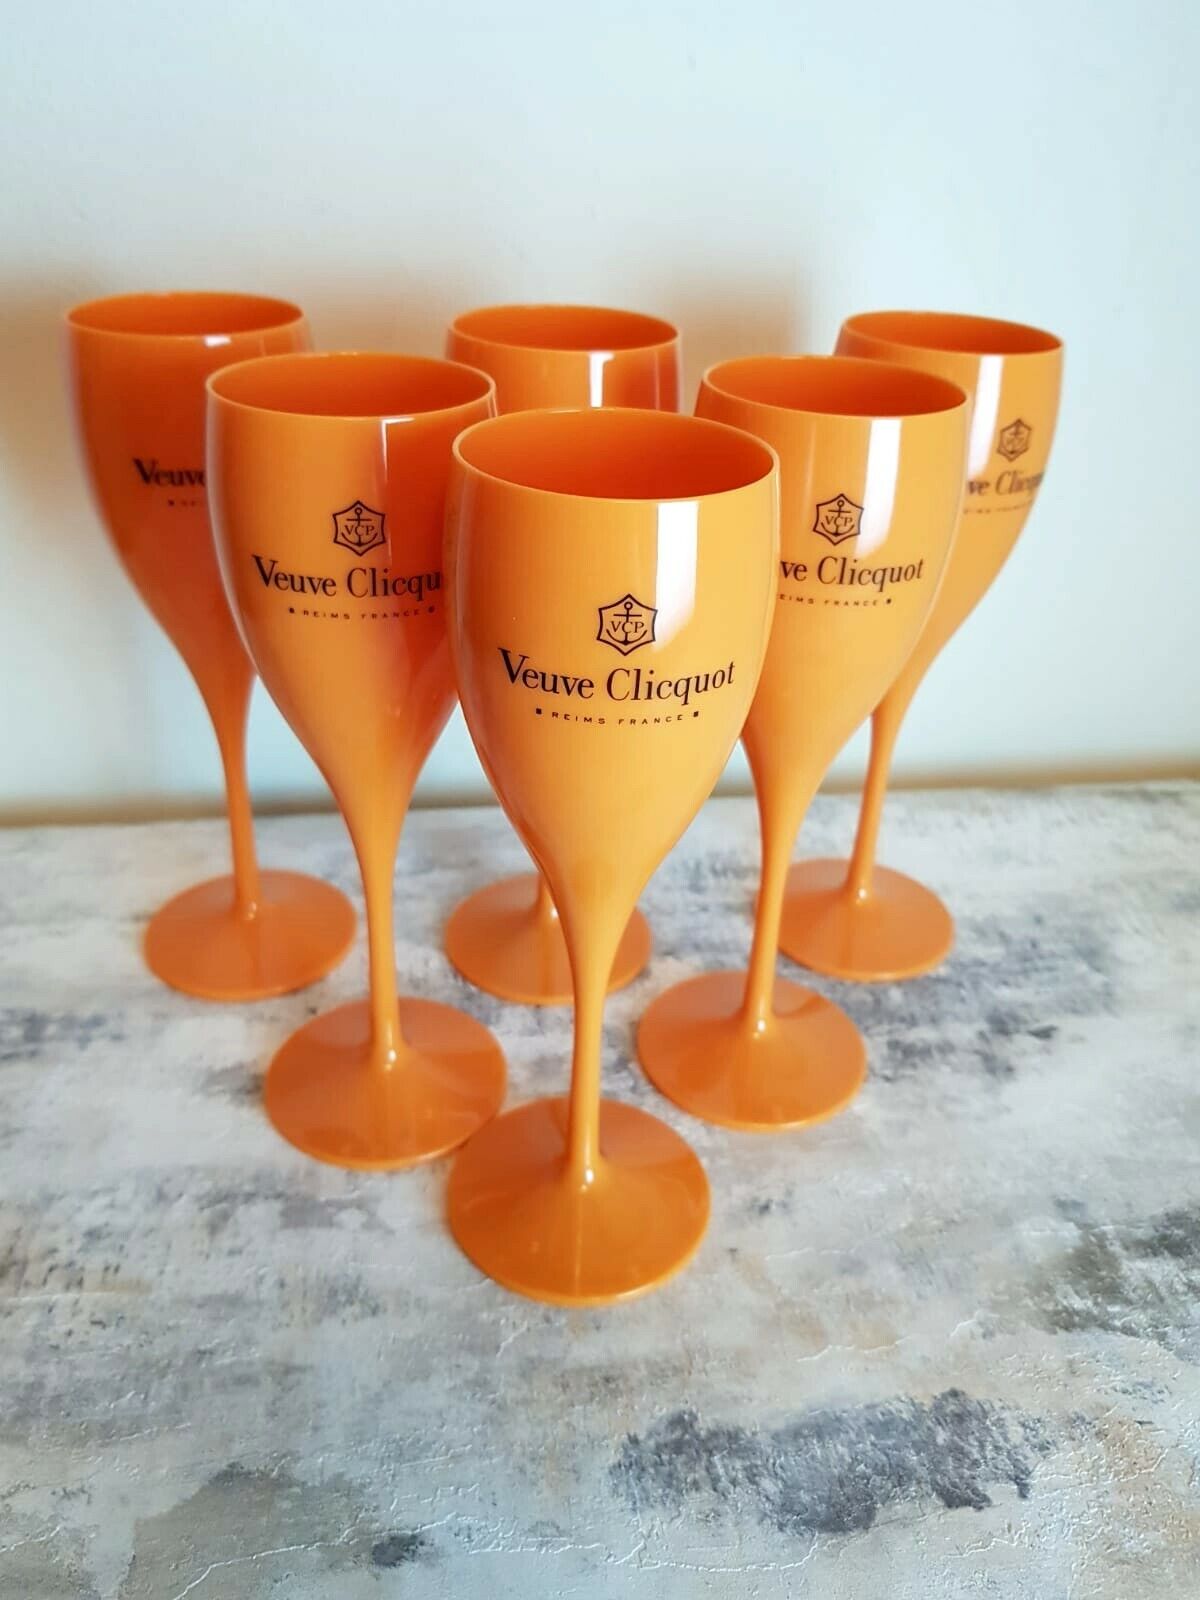 6x Veuve Clicquot Akryl Plast Champagne Orange Flutes Vinglas 180ml